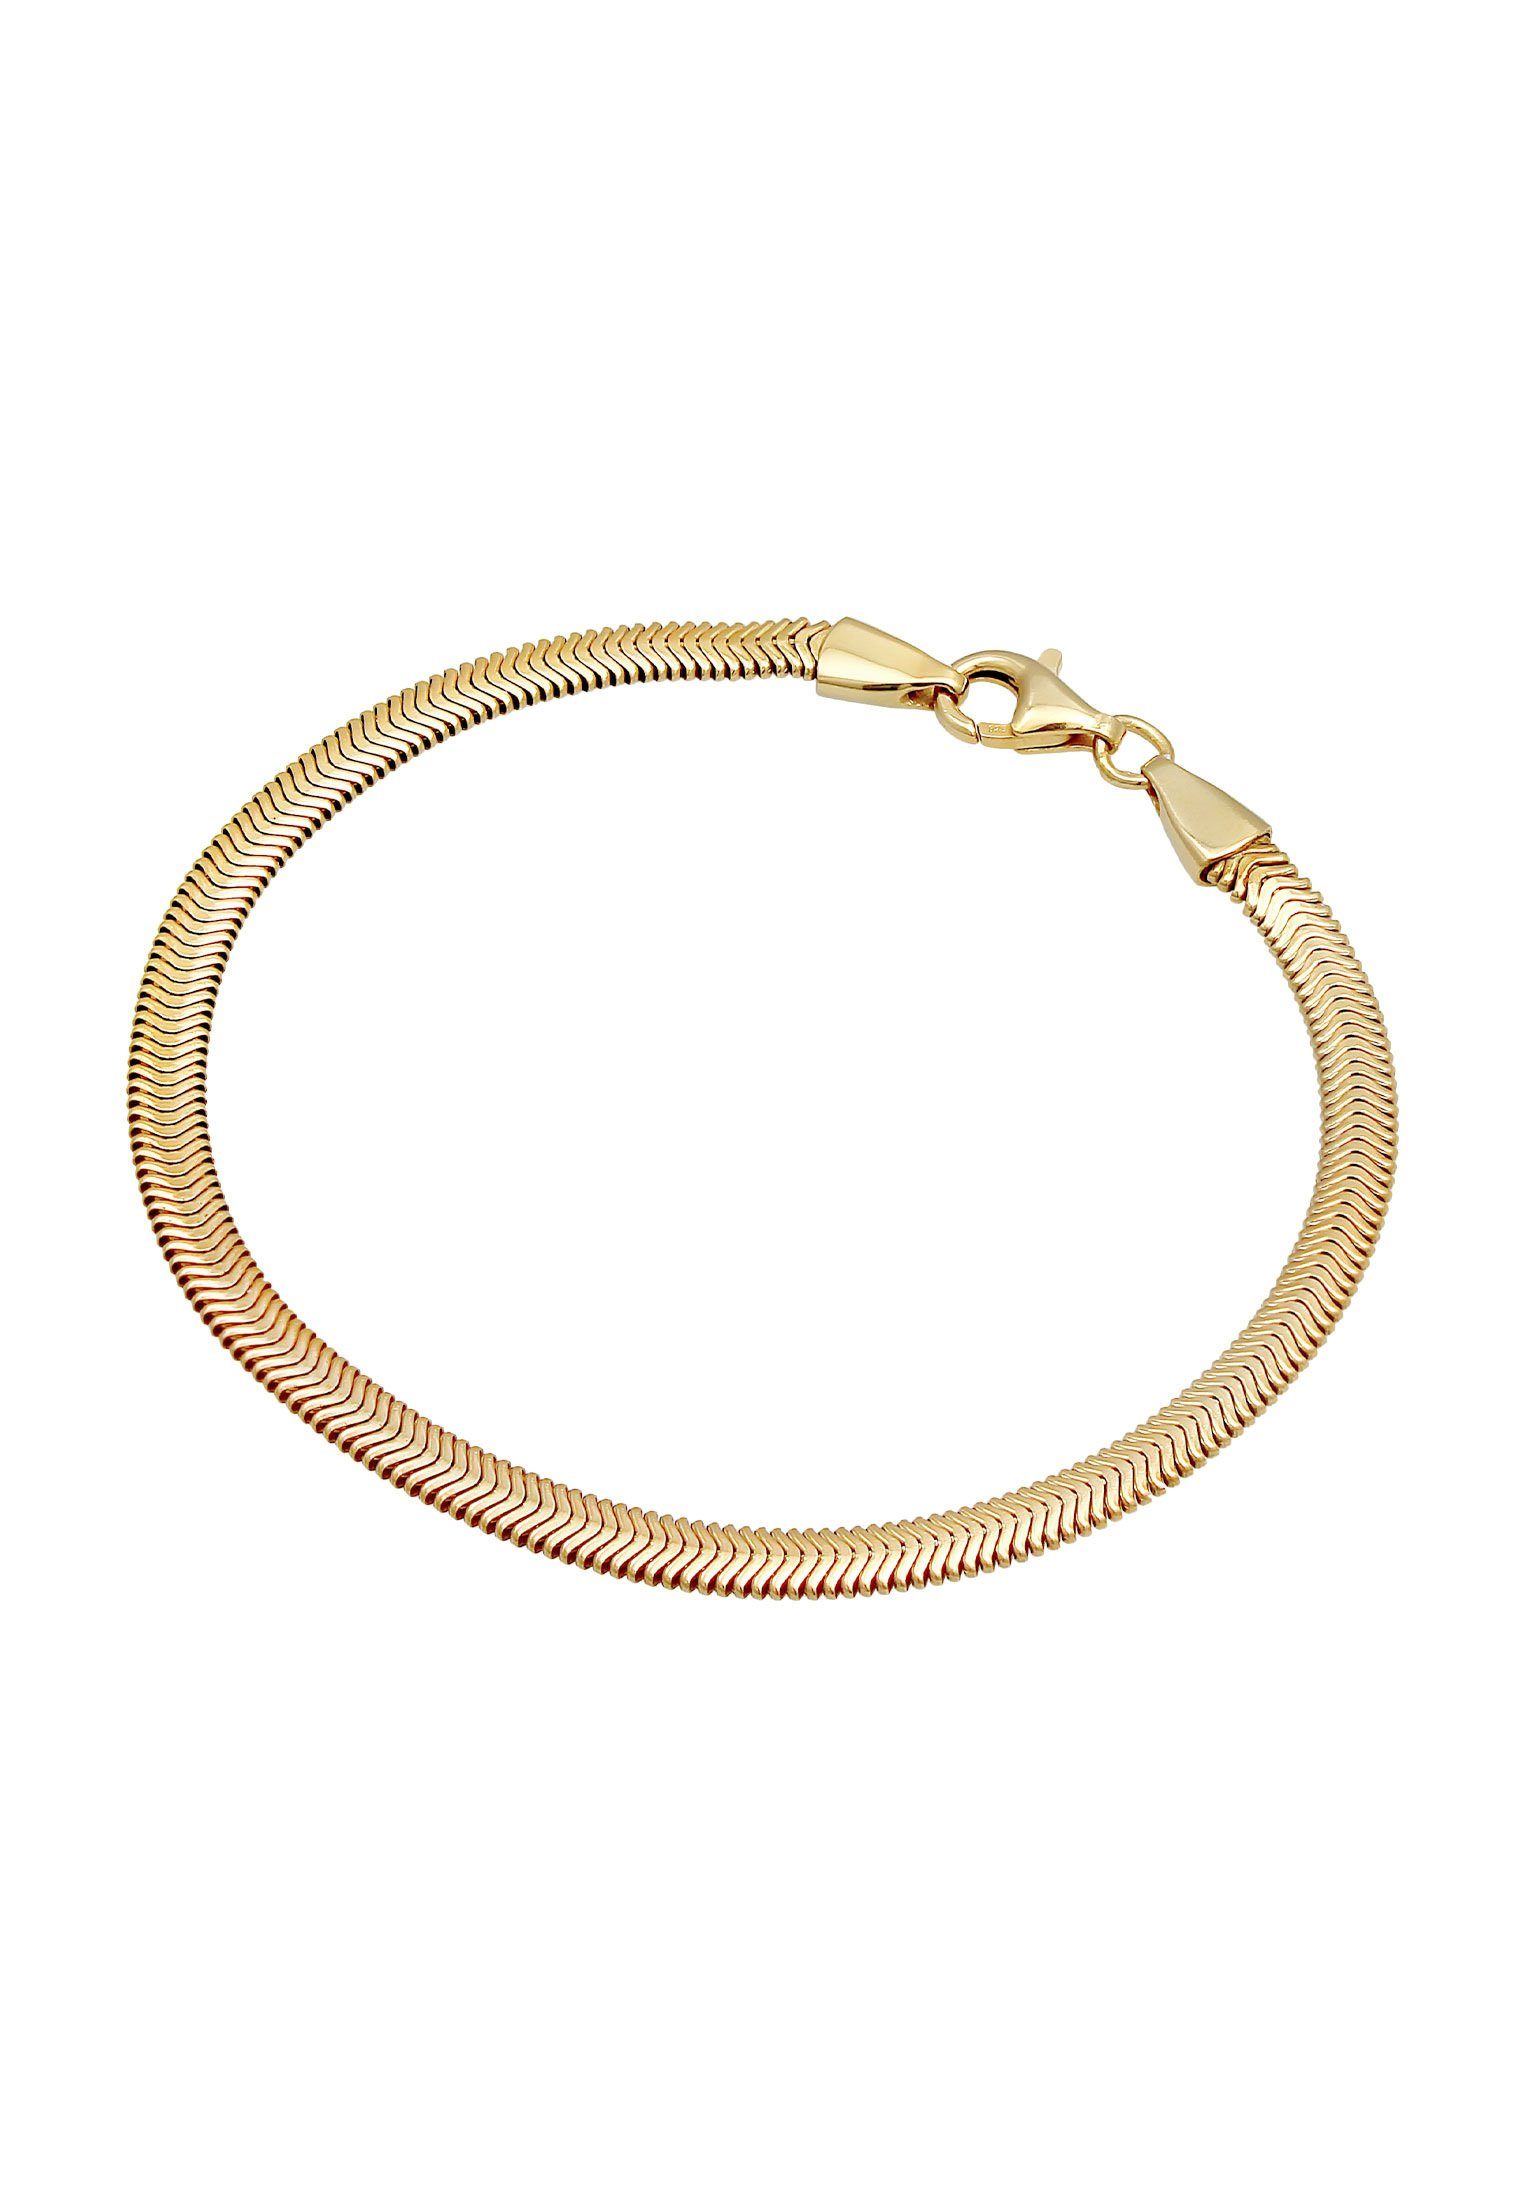 Kuzzoi Armband Schlangenkette 925 Elegant Flach Silber Fischgräte Gold